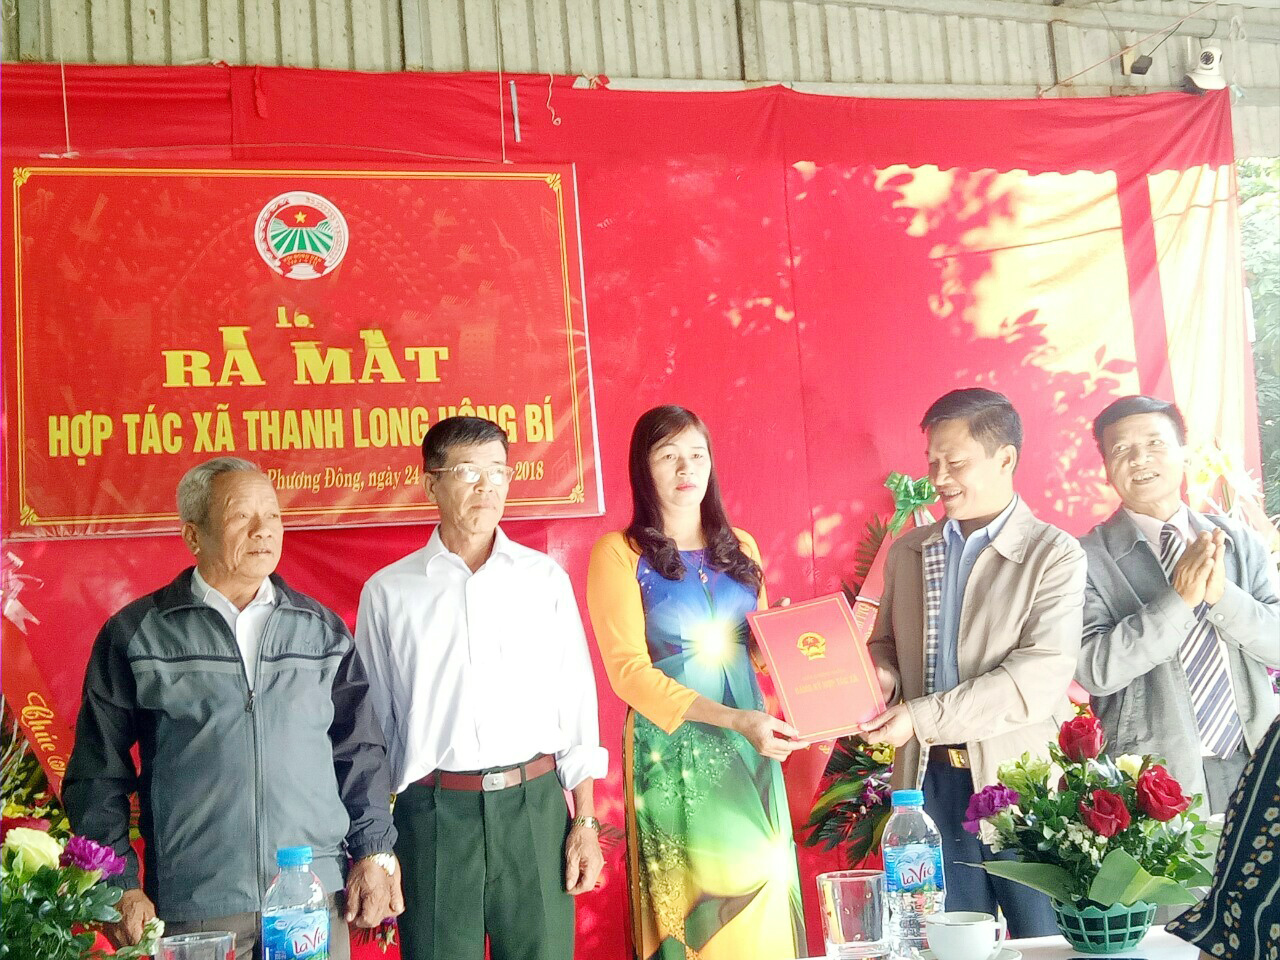 Lãnh đạo TP Uông Bí trao quyết định thành lập HTX Thanh long Uông Bí cho các thành viên HĐQT của HTX.